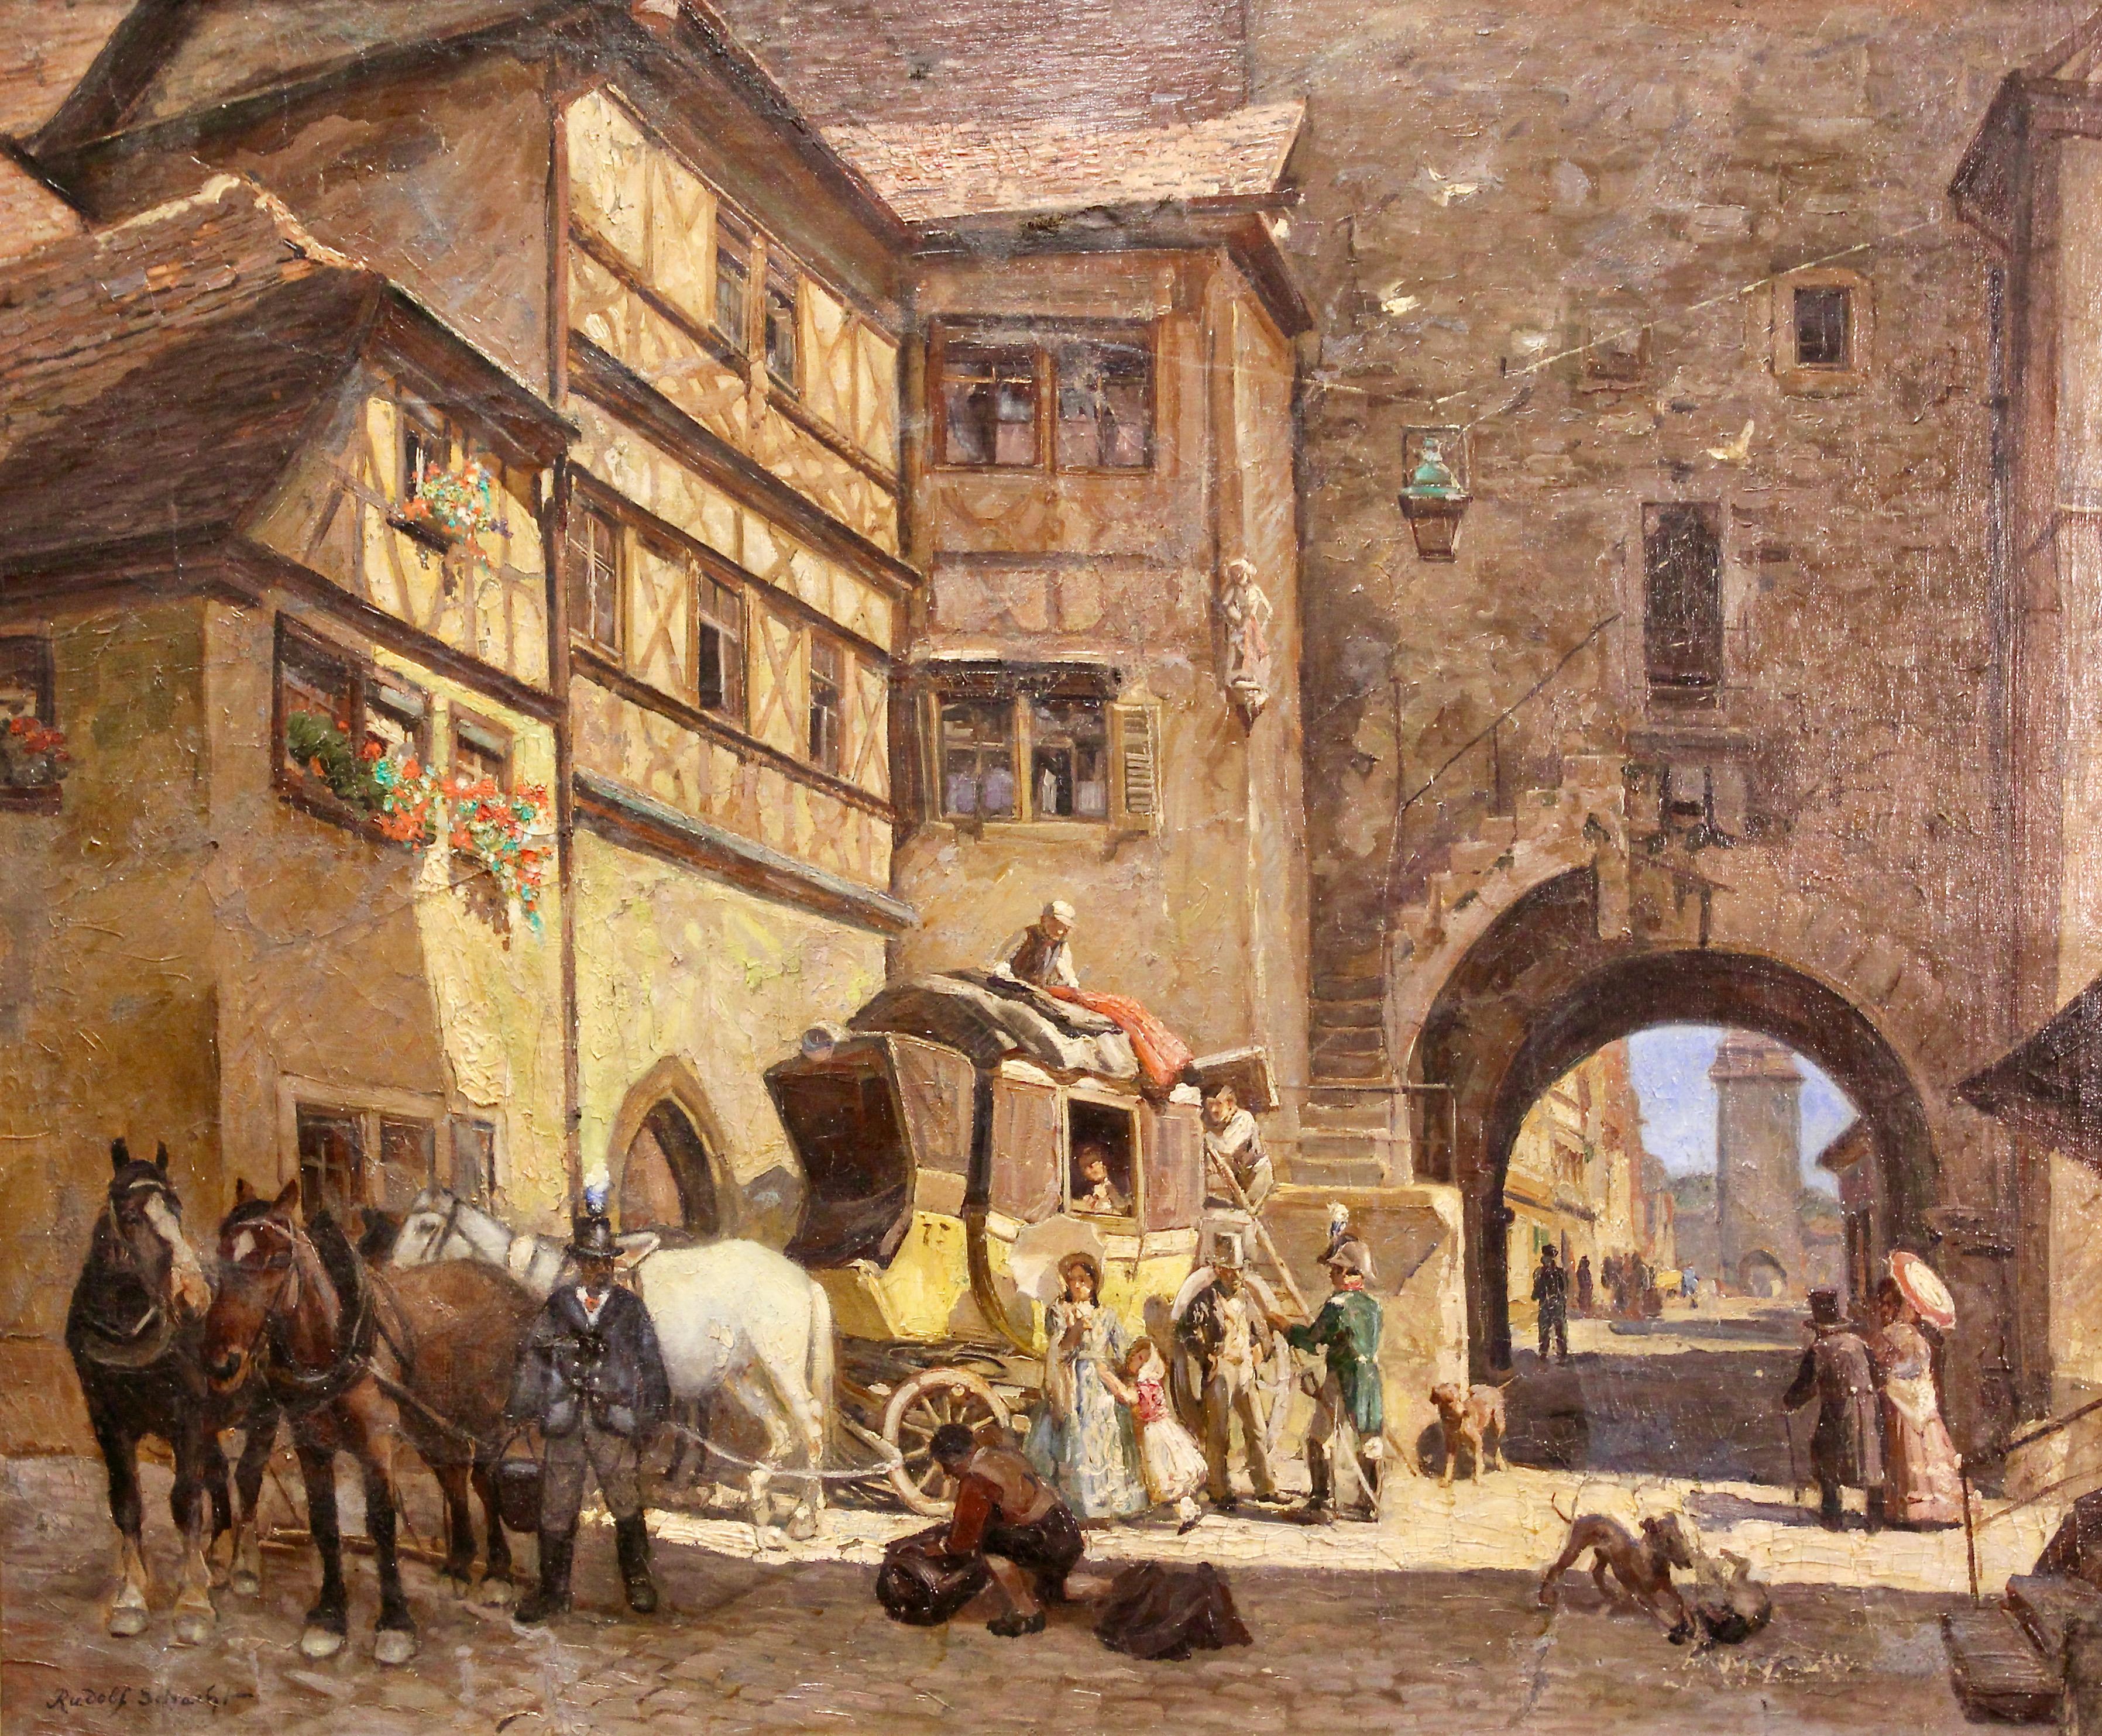 Rudolf Schacht, peinture à l'huile, scène vivante de vieille ville avec calèche et chevaux.

Condition liée à l'âge.
La peinture est endommagée par endroits et a besoin d'être restaurée.
Sur demande, nous sommes heureux de vous proposer une